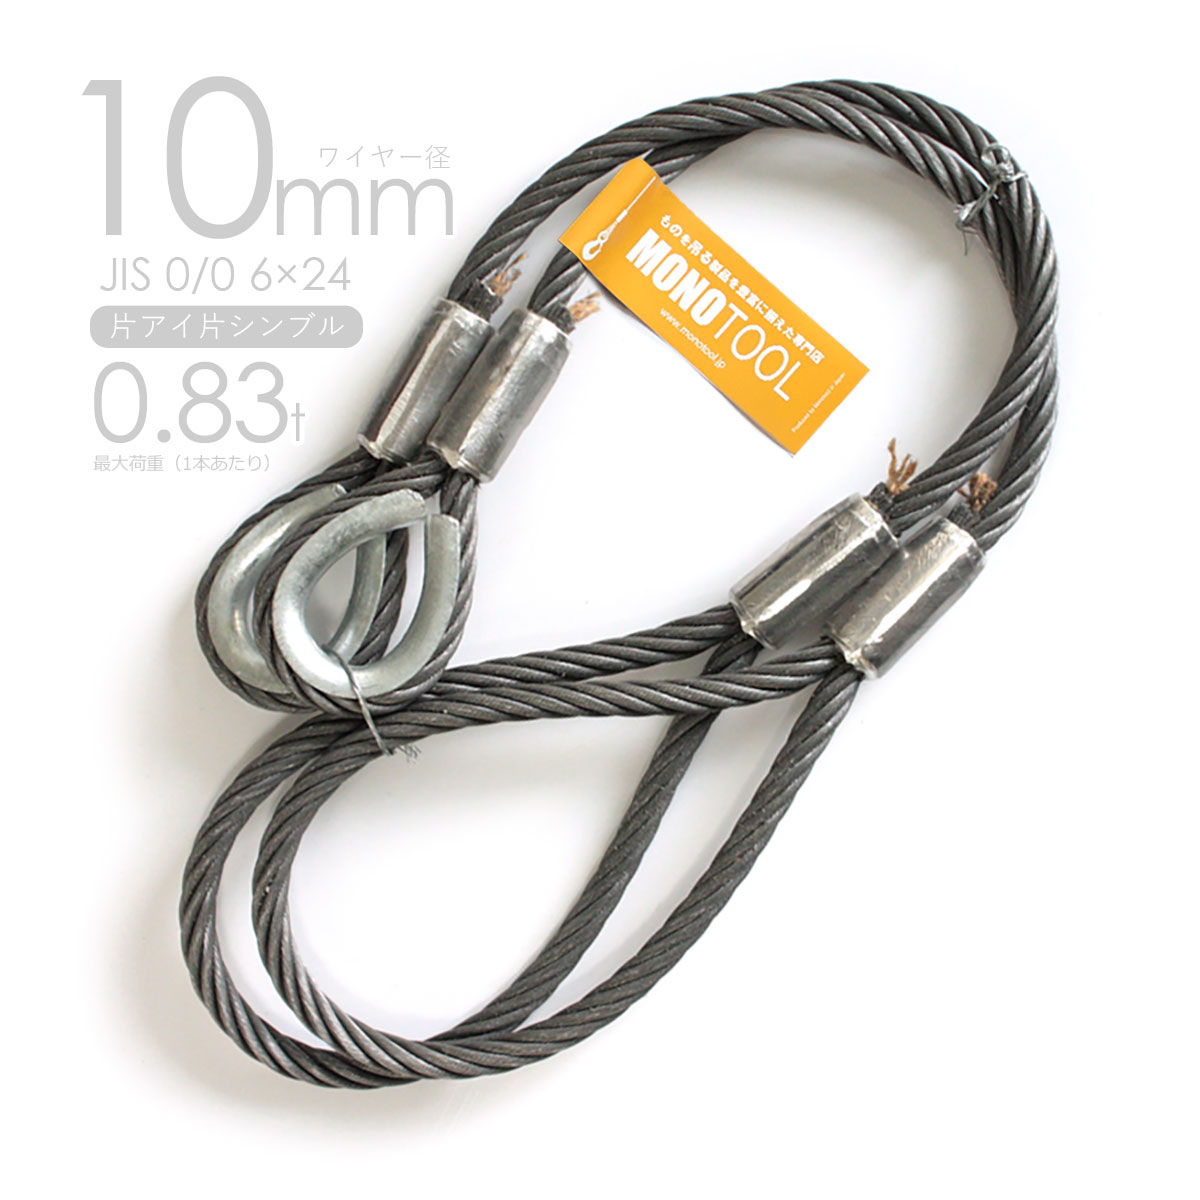 アウトワイヤロープ JIS規格外 6×24G O 径12mm 長さ10m - 金物、部品